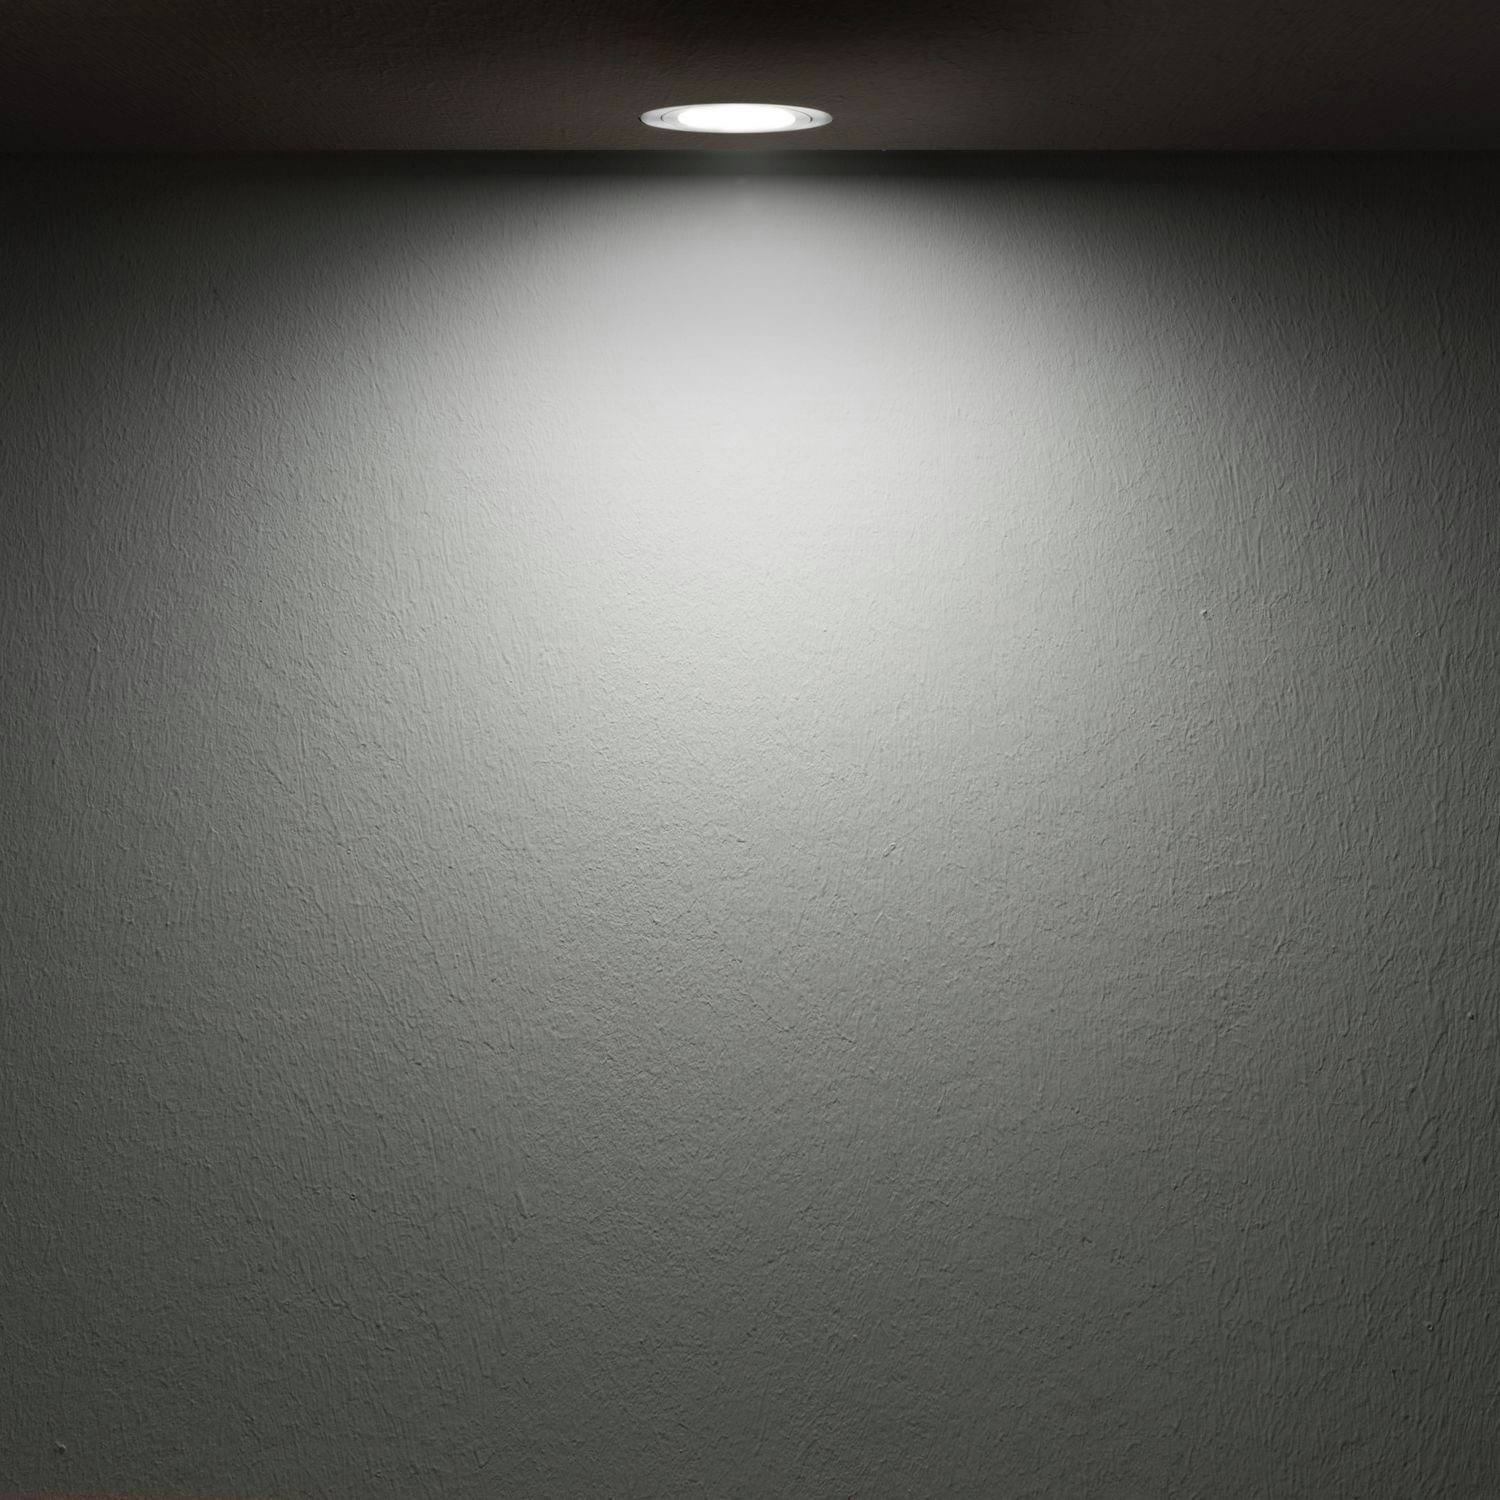 in weiß 5W Einbaustrahler LED von LEDANDO flach Leuchtmittel LED mit Einbaustrahler Set 3er extra